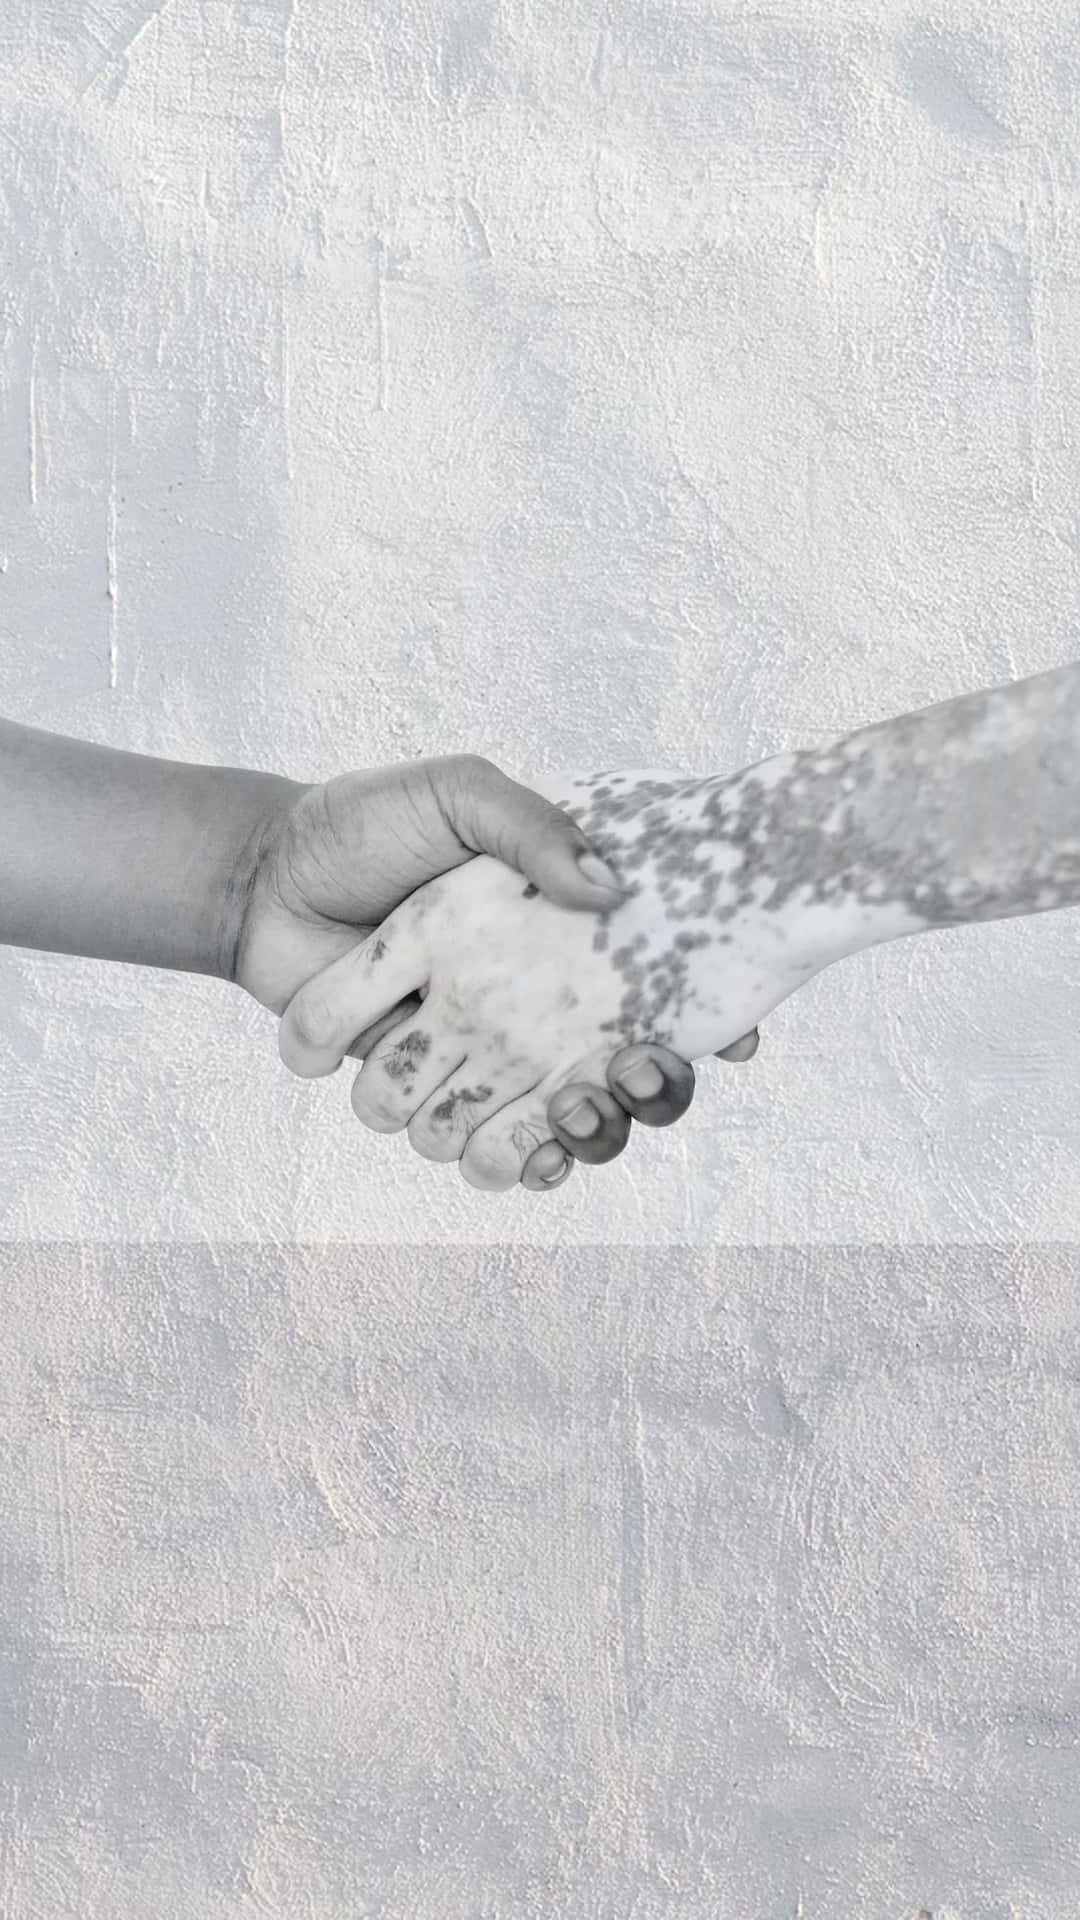 Håndtryk med vitiligo: Fremhæv din personlighed med en vidunderlig, marmoreret tekstur. Wallpaper